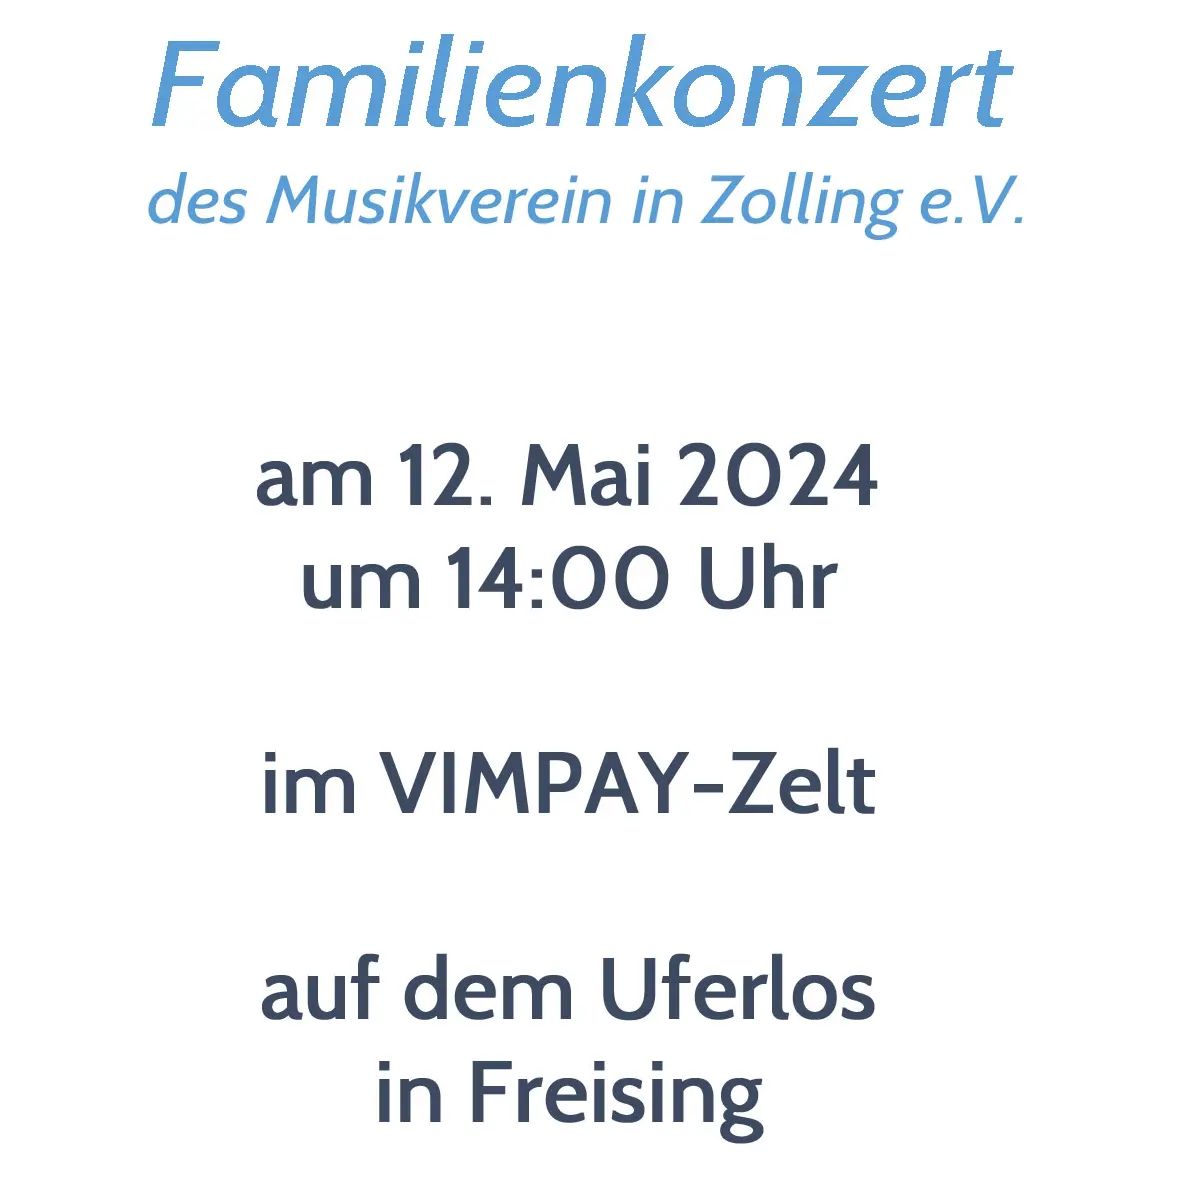 Musikverein goes @uferlos_festival_freising

Nächste Woche am Sonntag, den 12.05.2024 spielen wir um 14 Uhr auf dem Uferlos in Freising im VIMPAY-Zelt ein Familienkonzert.

Schaut vorbei, wir würden ...